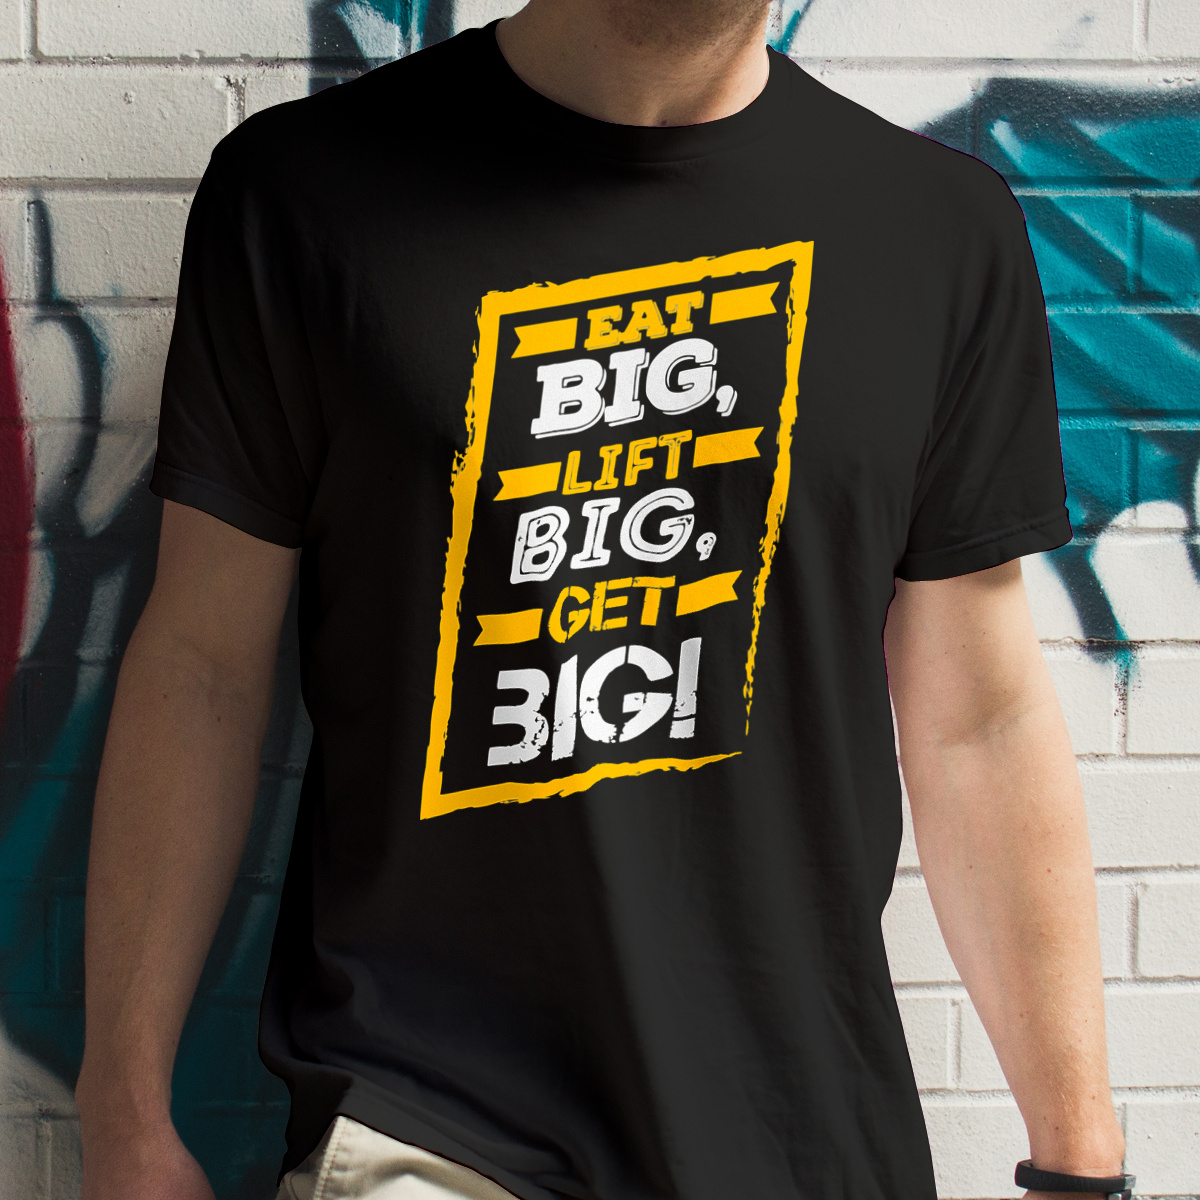 Eat Big Lift Big Get Big - Męska Koszulka Czarna